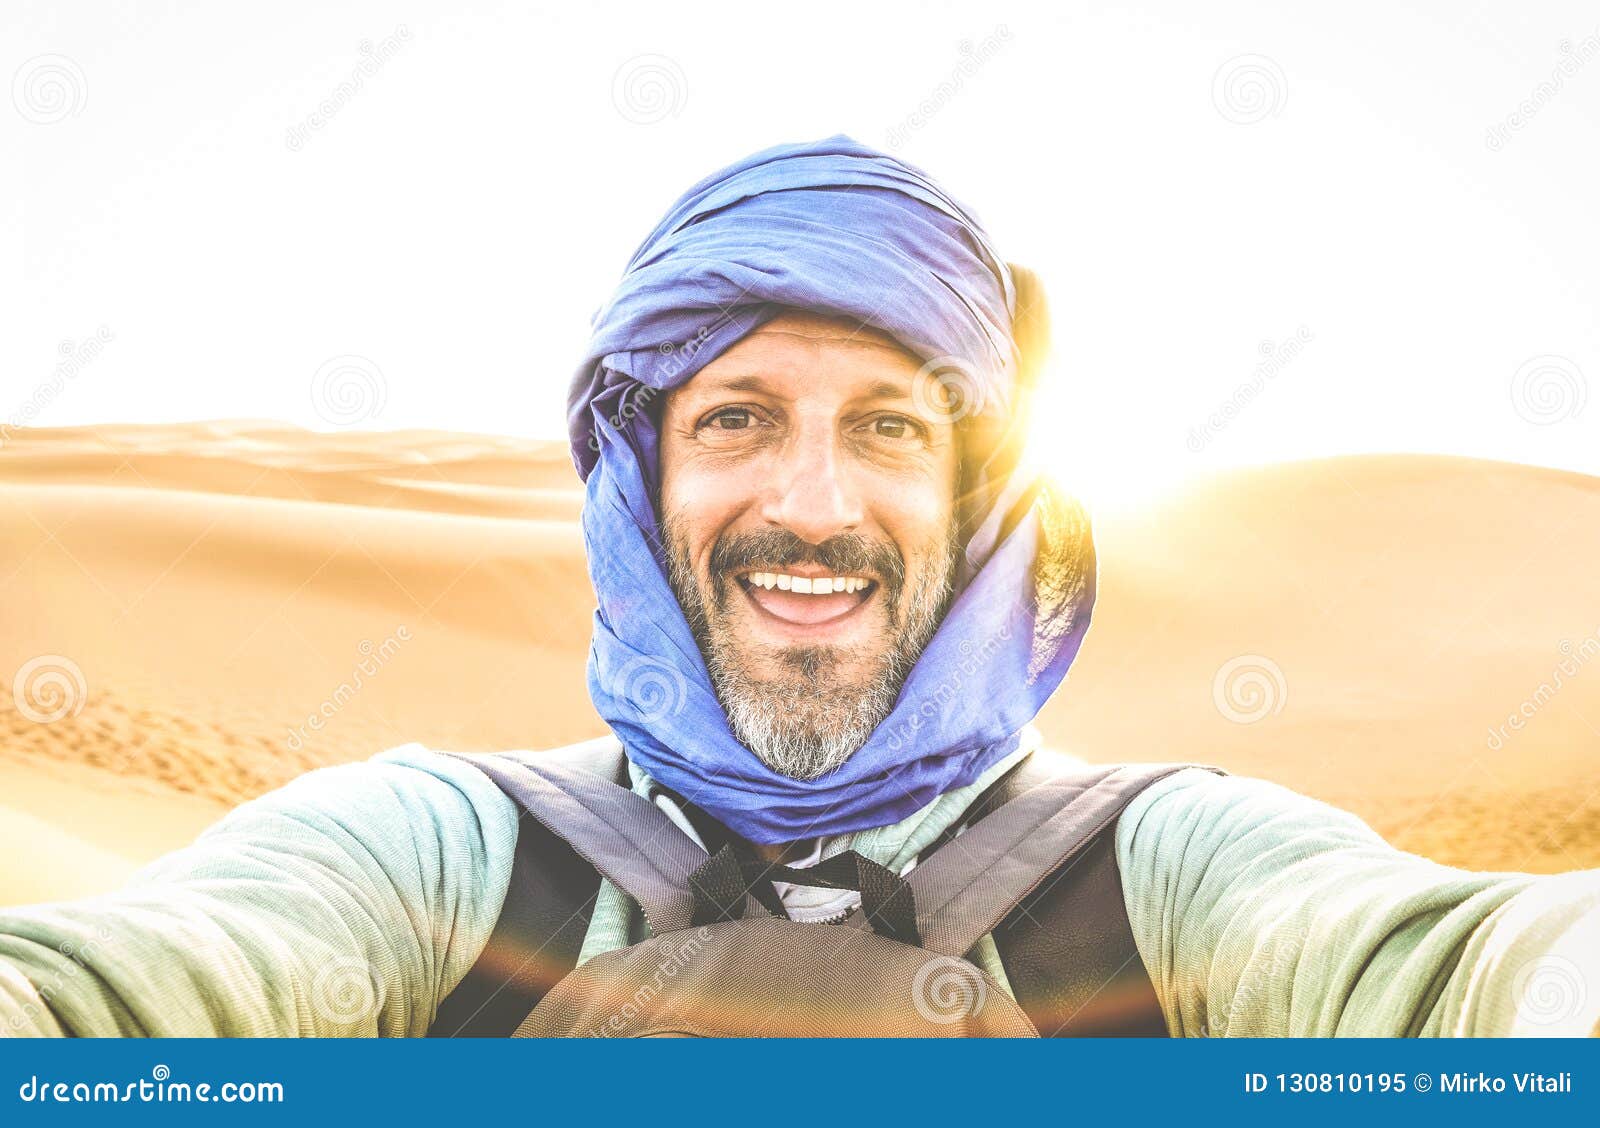 young man solo traveler taking selfie at erg chebbi desert dune